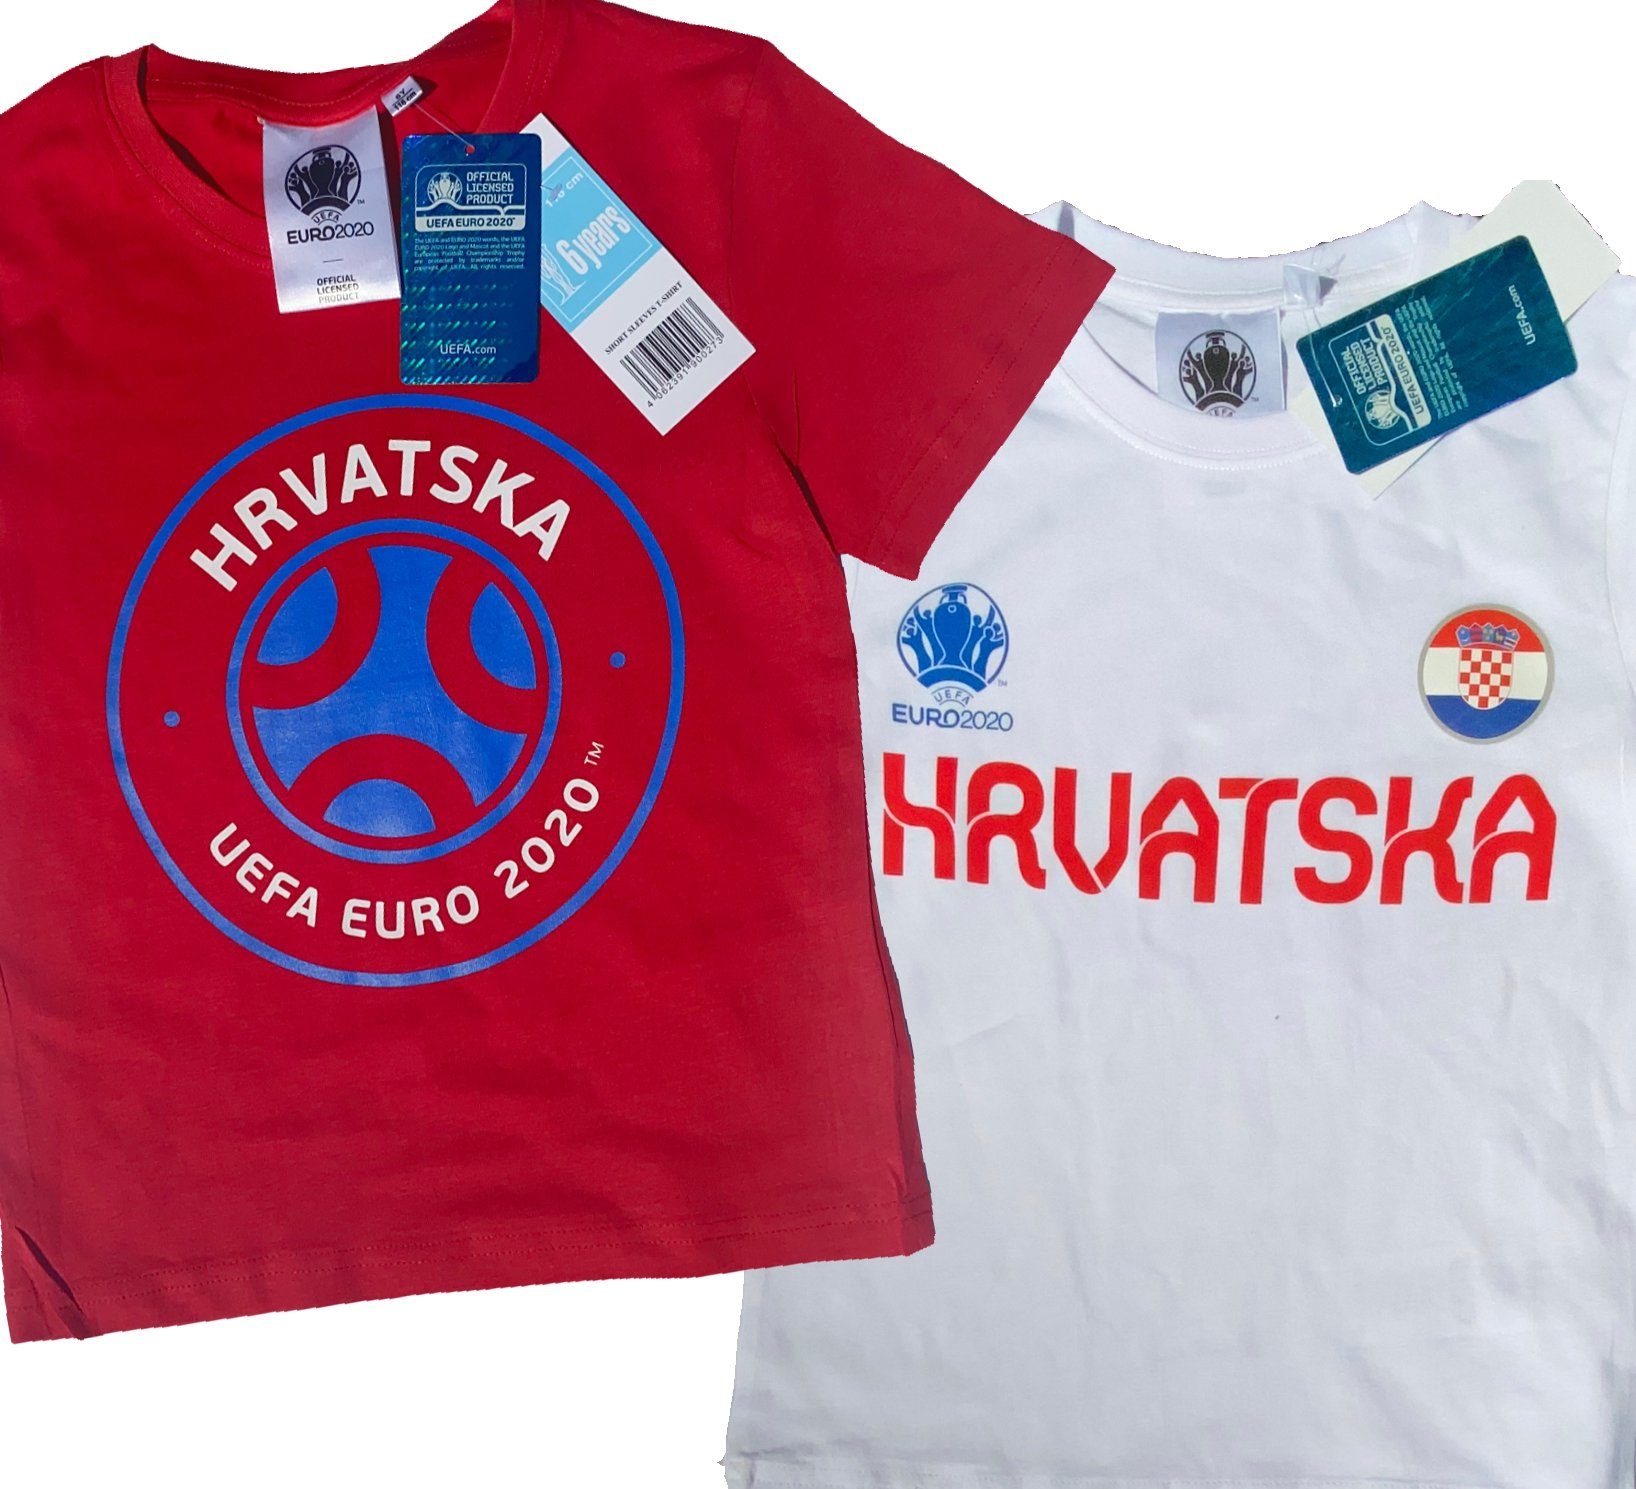 coole-fun-t-shirts T-Shirt »2x Kroatien Kinder T-Shirt EURO 2020 / 2021  Hrvatska Fußball Trikot Shirt DOPPELPACK rot und weiss Europameisterschaft  Jungen + Mädchen 6 8 10 12 Jahre Gr.116 128 140 152« (2er-Pack) online  kaufen | OTTO